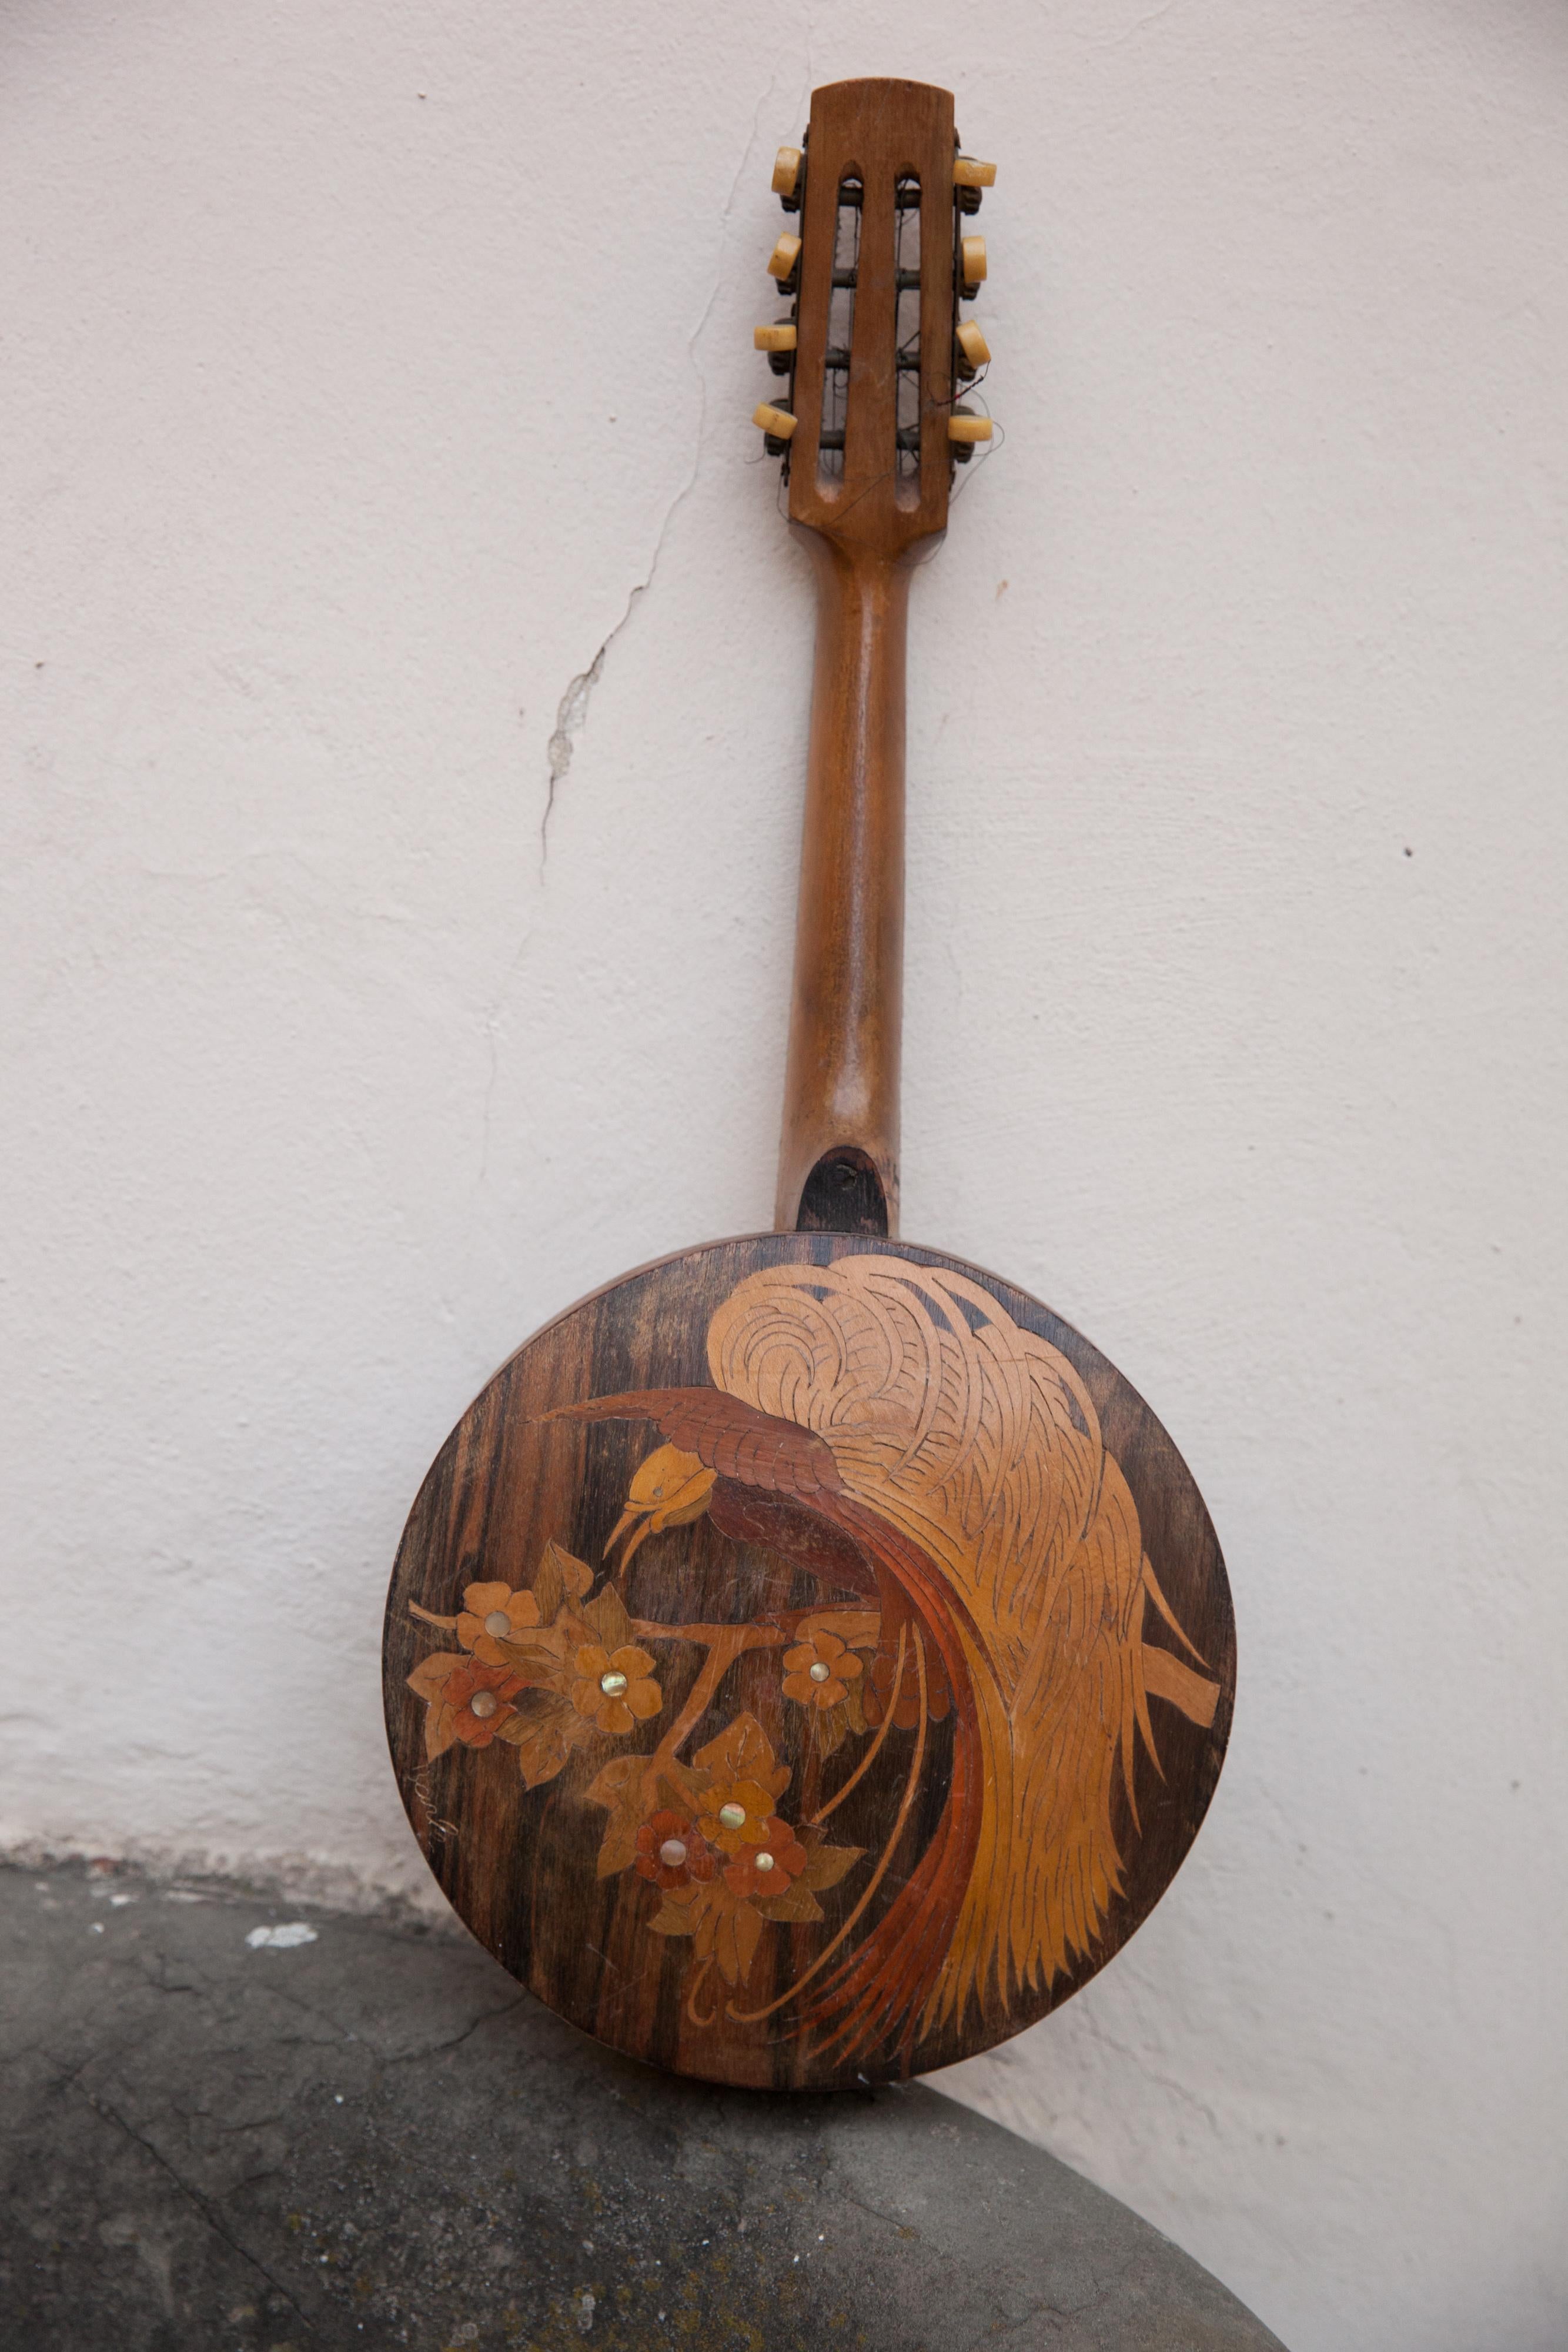 Banjo. Zu restaurierendes Musikinstrument der Art Deco-Ära aus Intarsienholz.

Signiert auf dem Griff Achille Jacomoni, die Unterschrift ist mit der Technik der Pyrografie gemacht.

MATERIALIEN: Holz, Metall, Pergament.
Ein Vogel mit exotischen und